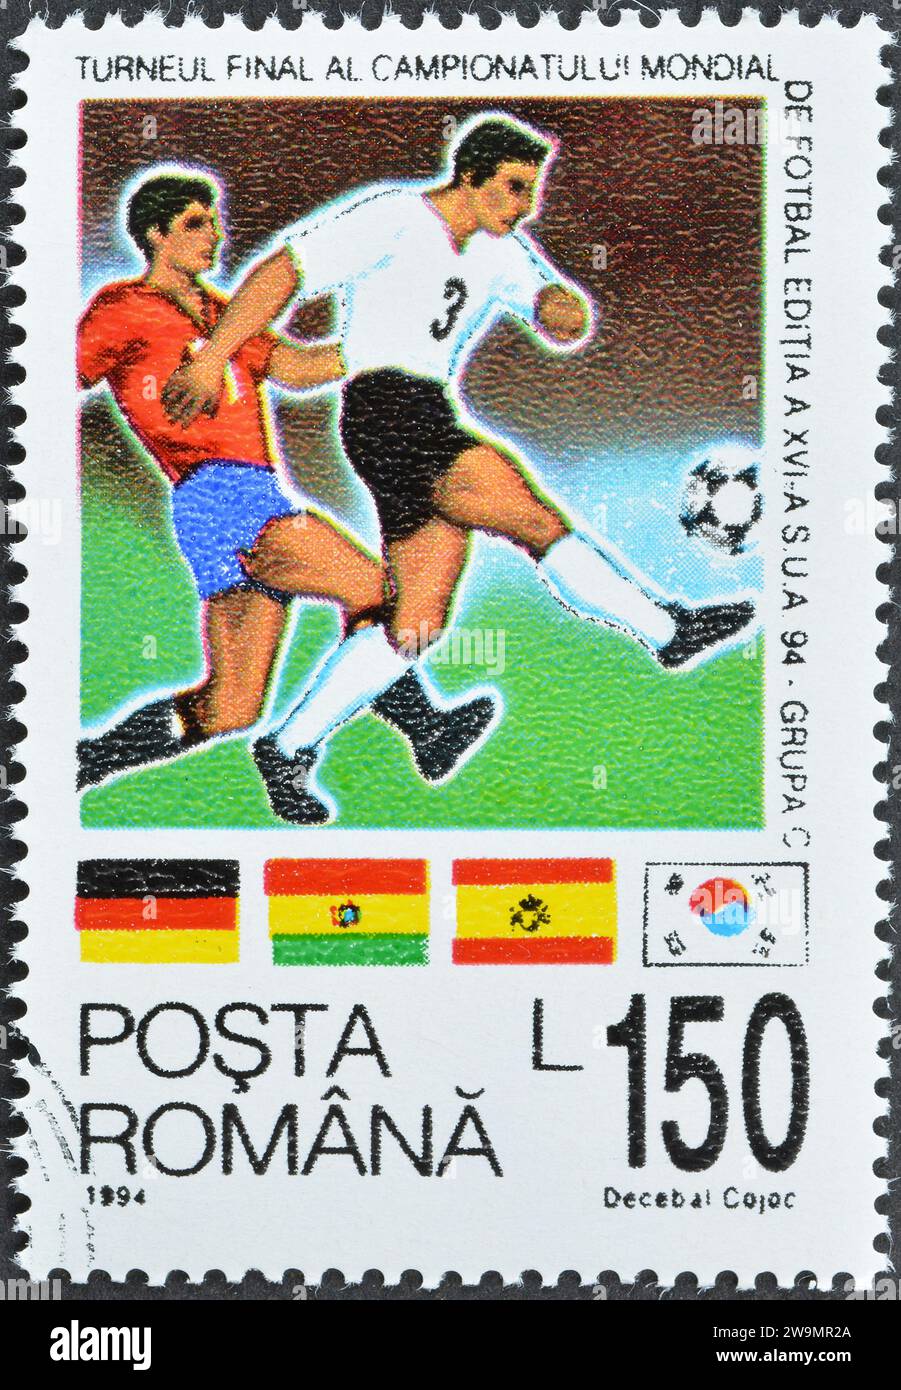 Timbre-poste annulé imprimé par la Roumanie, qui promeut le football, coupe du monde - USA, circa 1994. Banque D'Images